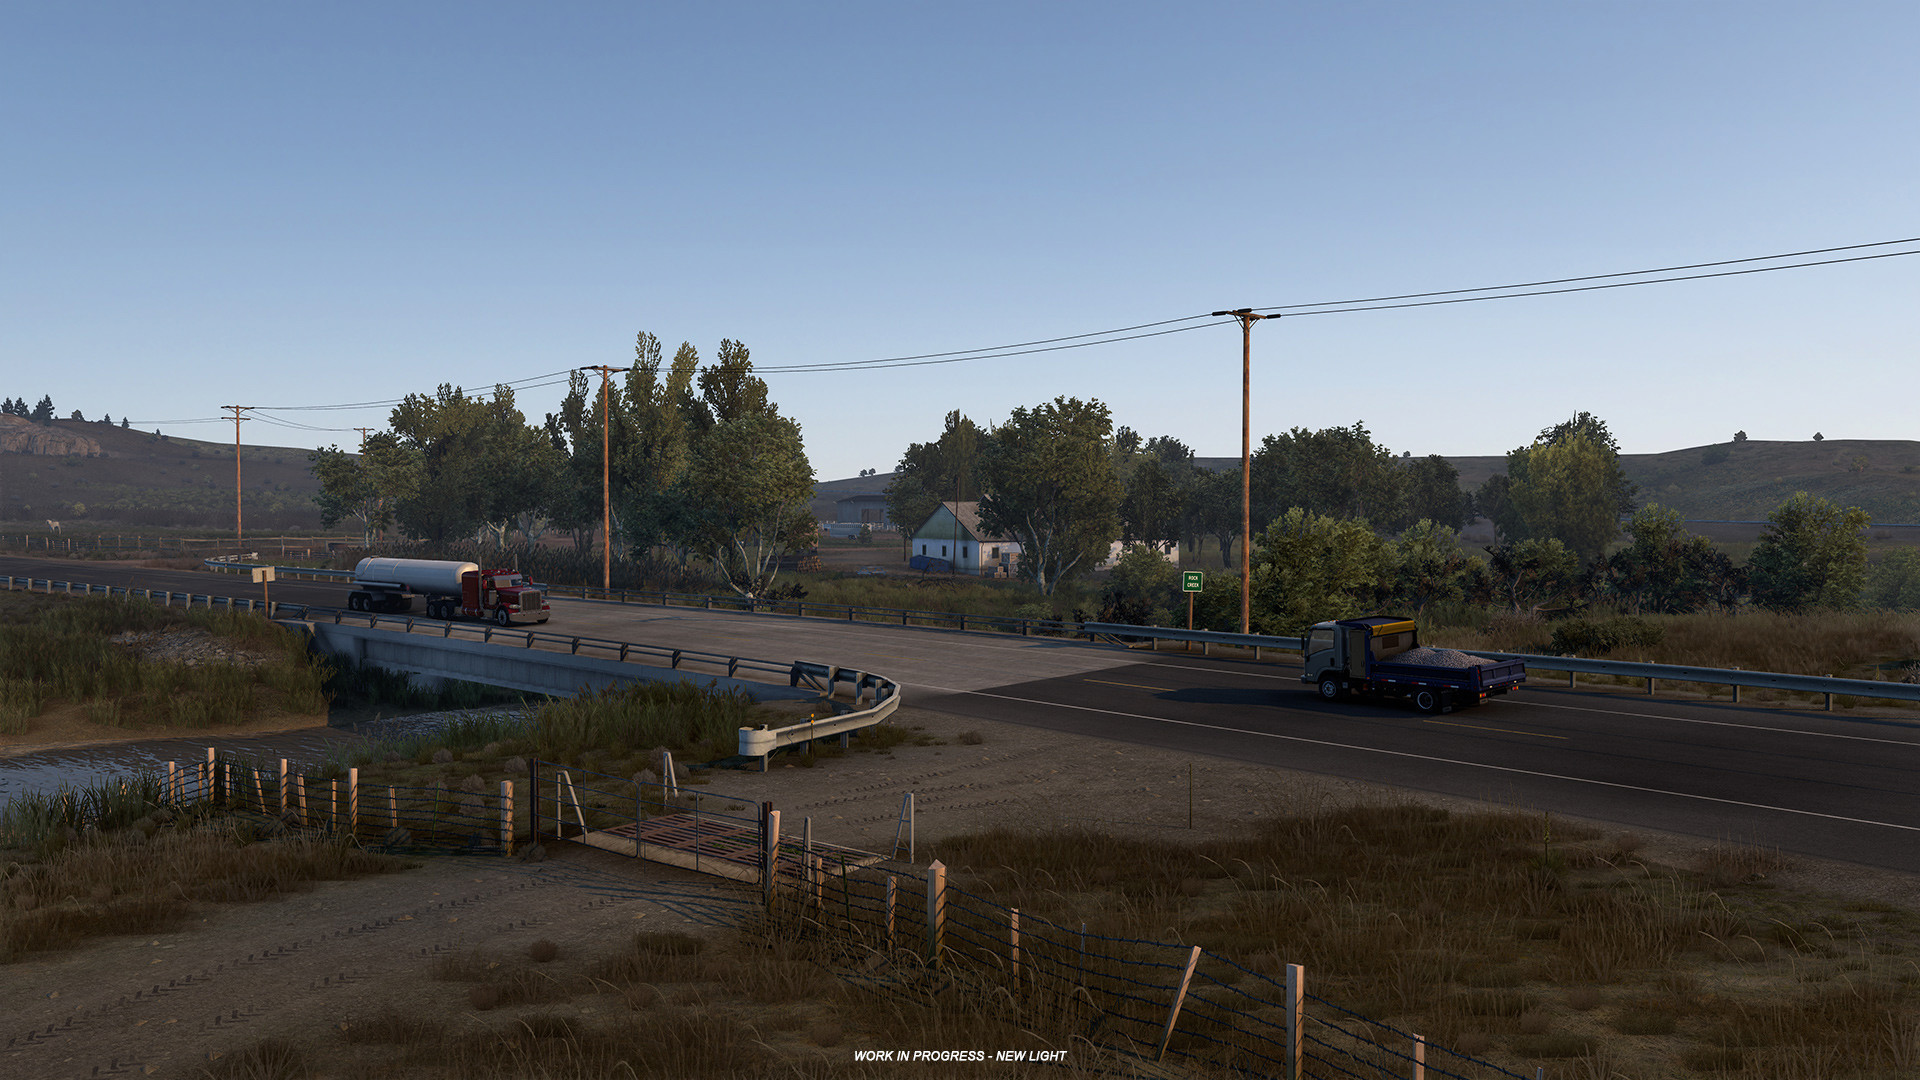 《美国卡车模拟》将驶向怀俄明州 视觉效果升级